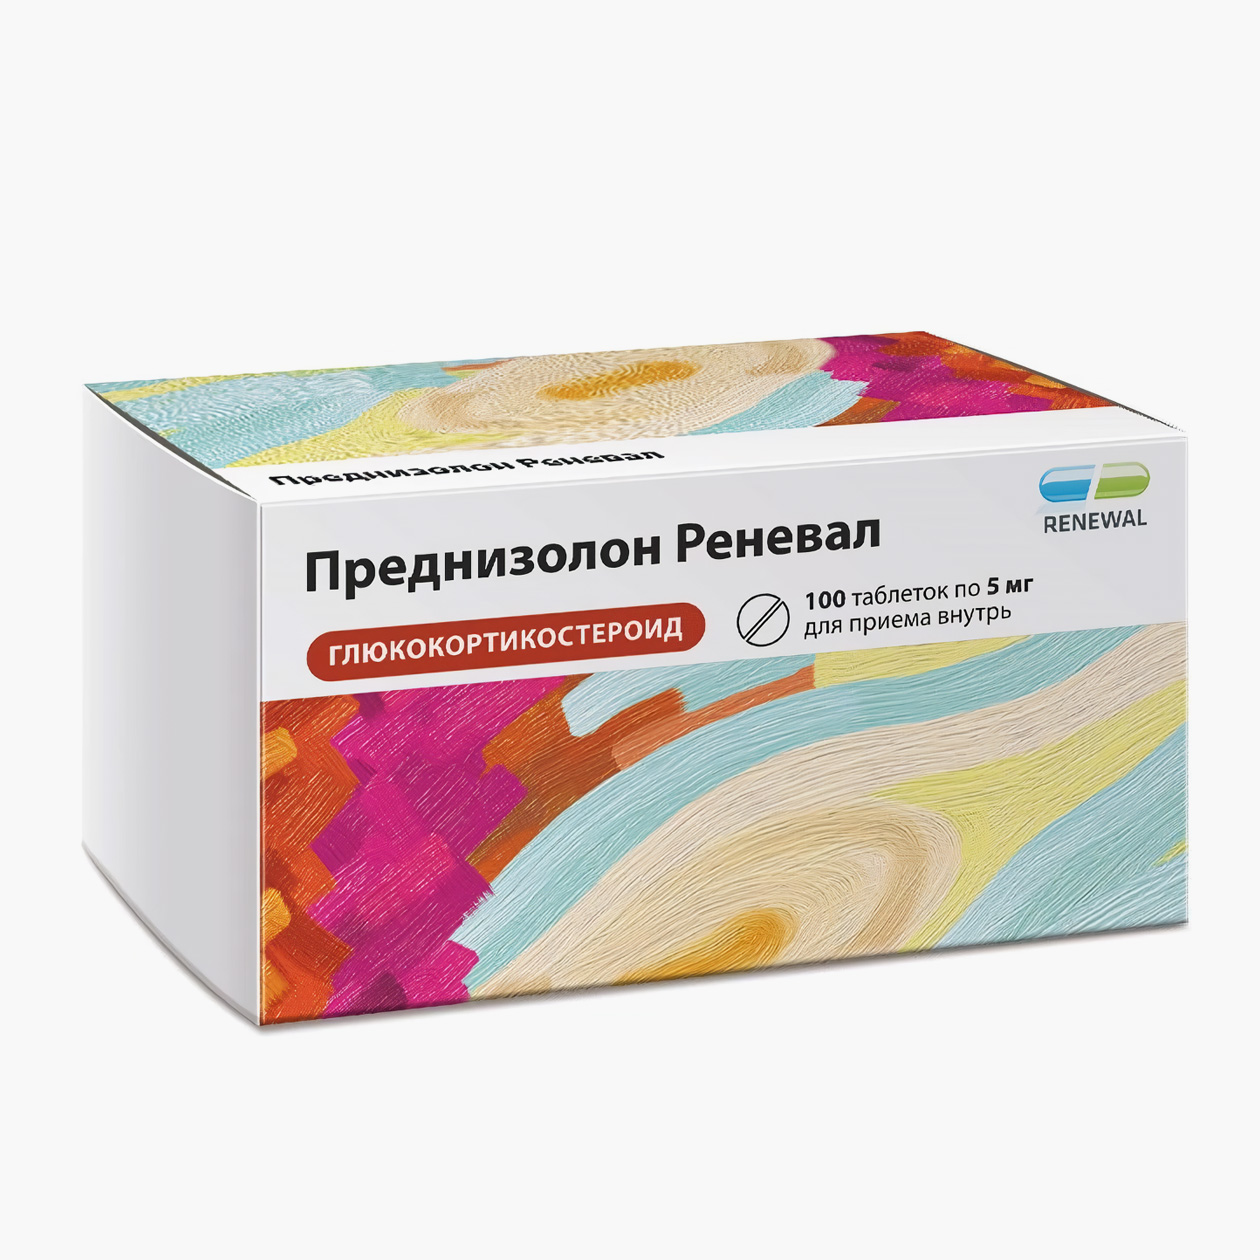 «Преднизолон Реневал» в таблетках. Источник: apteka.ru